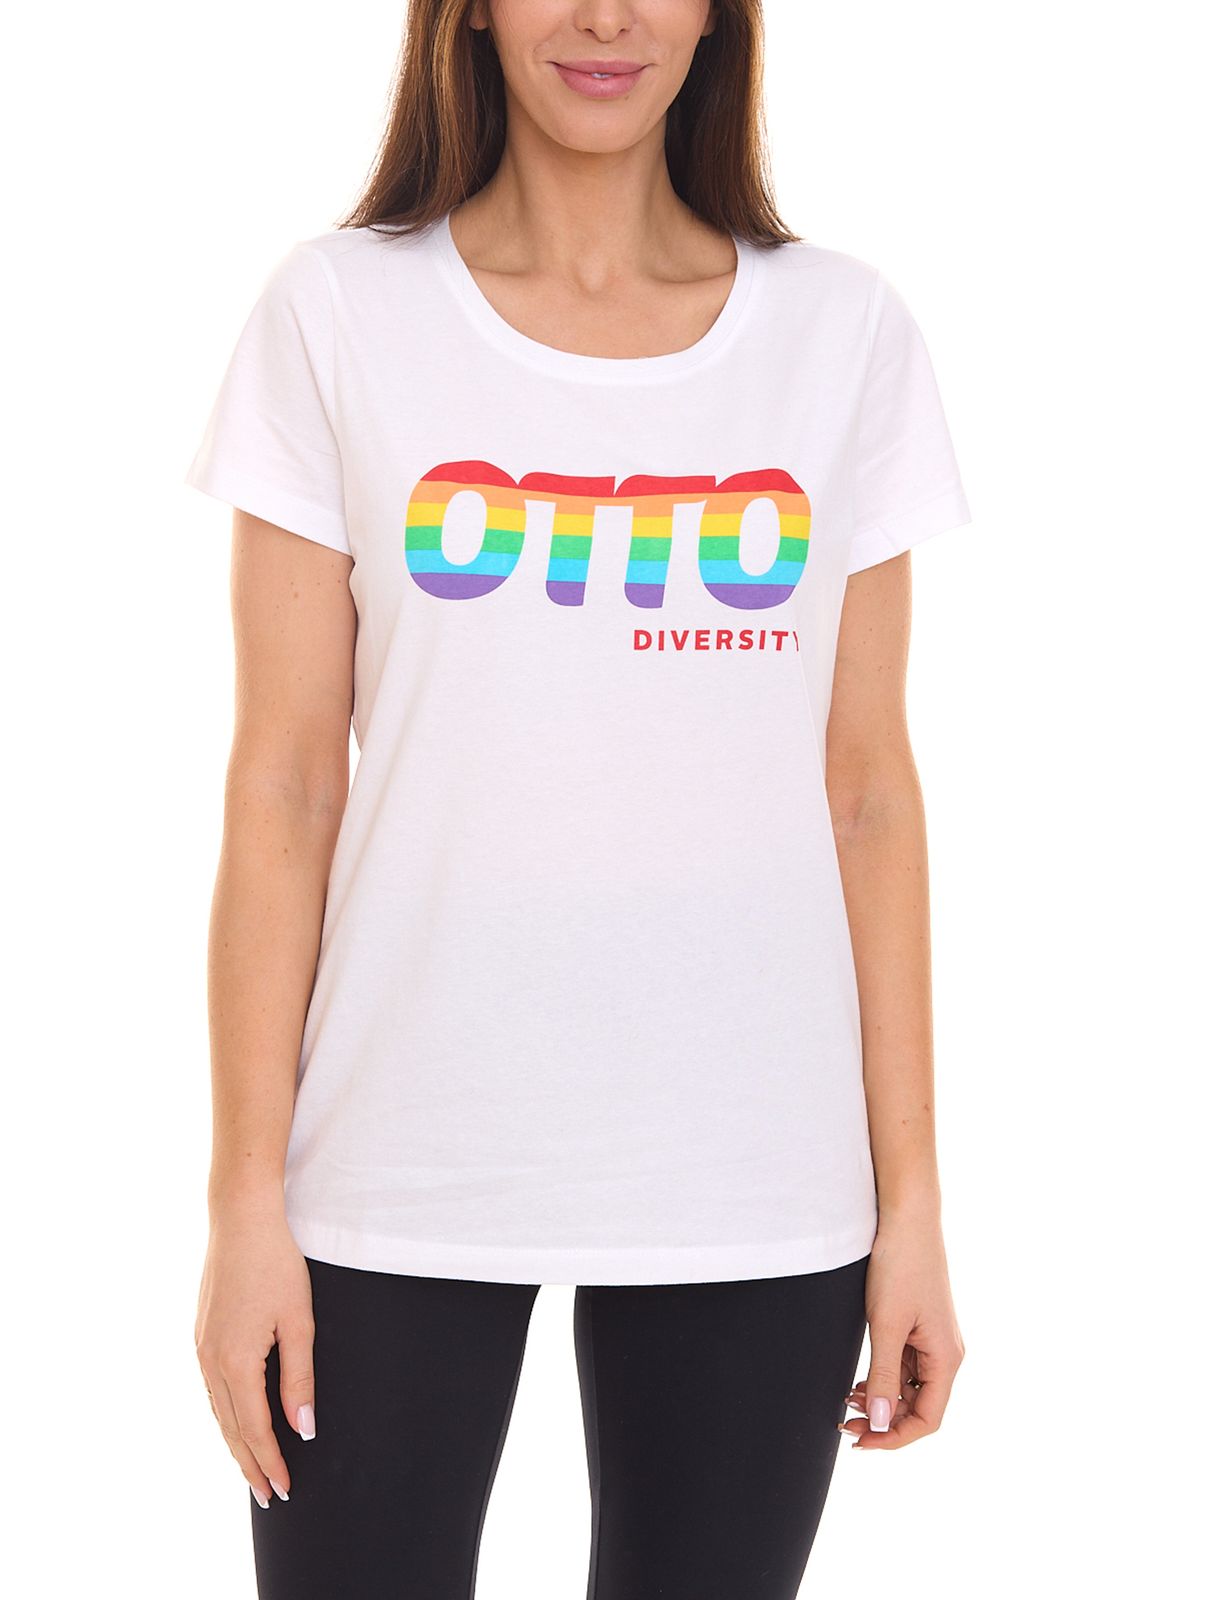 OTTO products T-Shirt Damen Baumwoll-Shirt Diversity mit Regenbogendruck Basic-Shirt 24991656 Weiß von OTTO